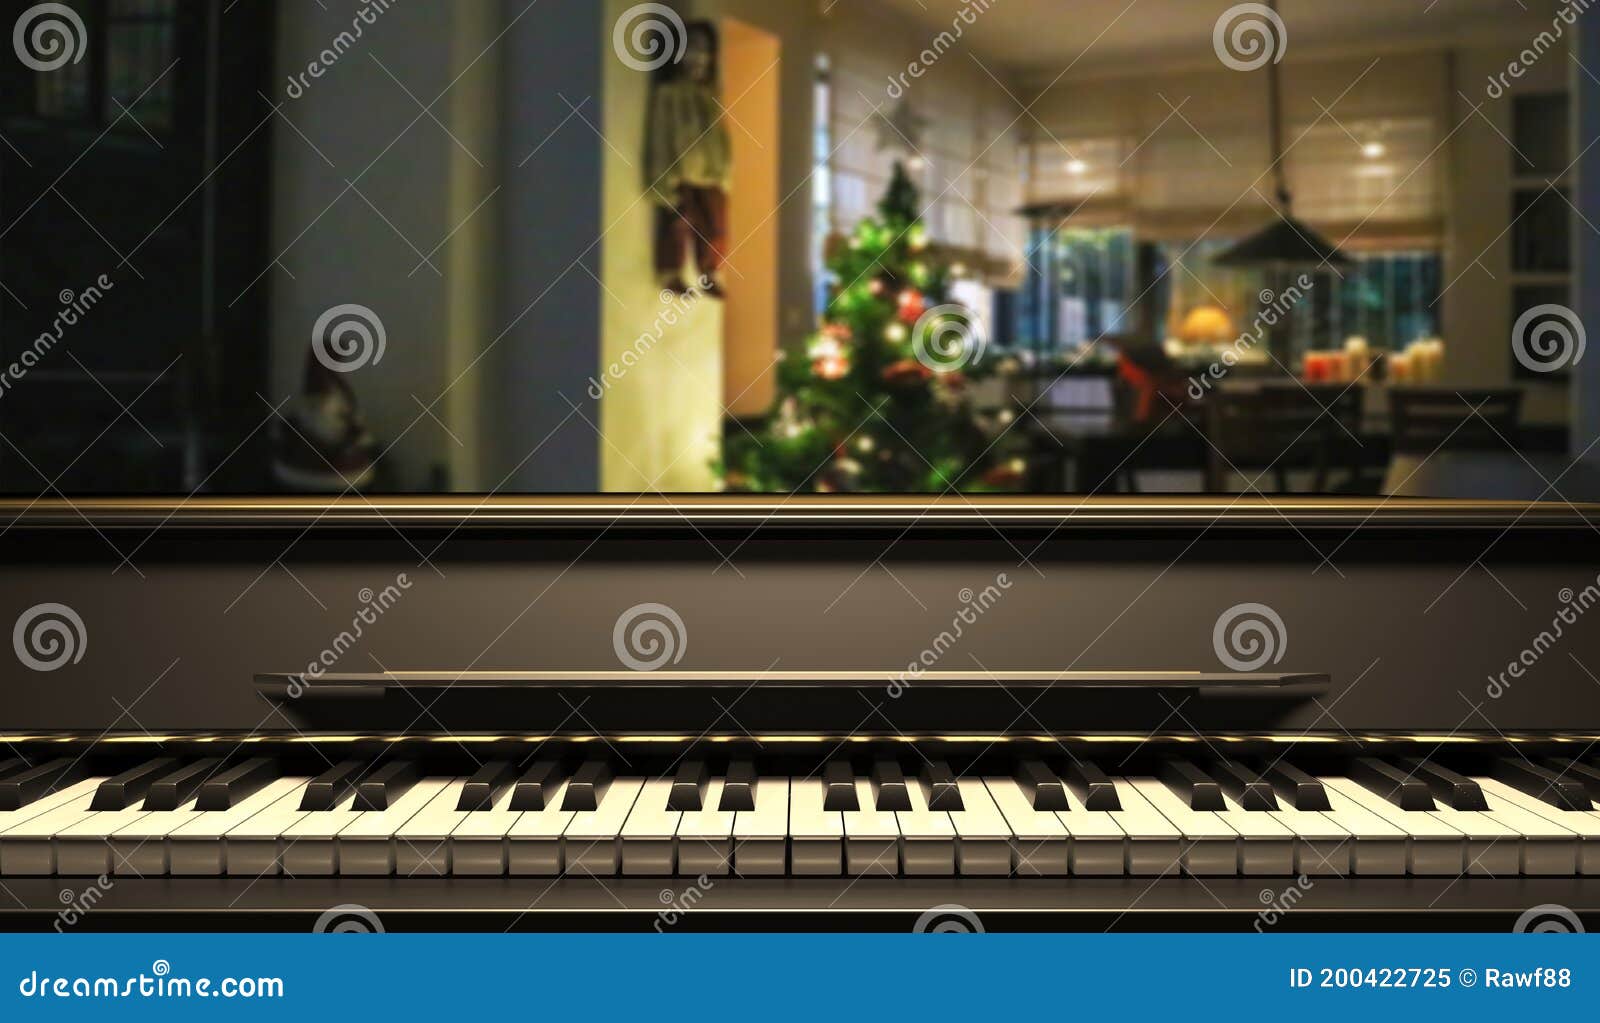 Hòa với không khí Giáng sinh bằng phím đàn piano thần thánh trên nền nhạc giáng sinh và cây thông đầy lấp lánh. Hình ảnh nên xem bao gồm bàn phím piano sẽ mang đến một không gian ấm cúng, lãng mạn cho gia đình bạn.